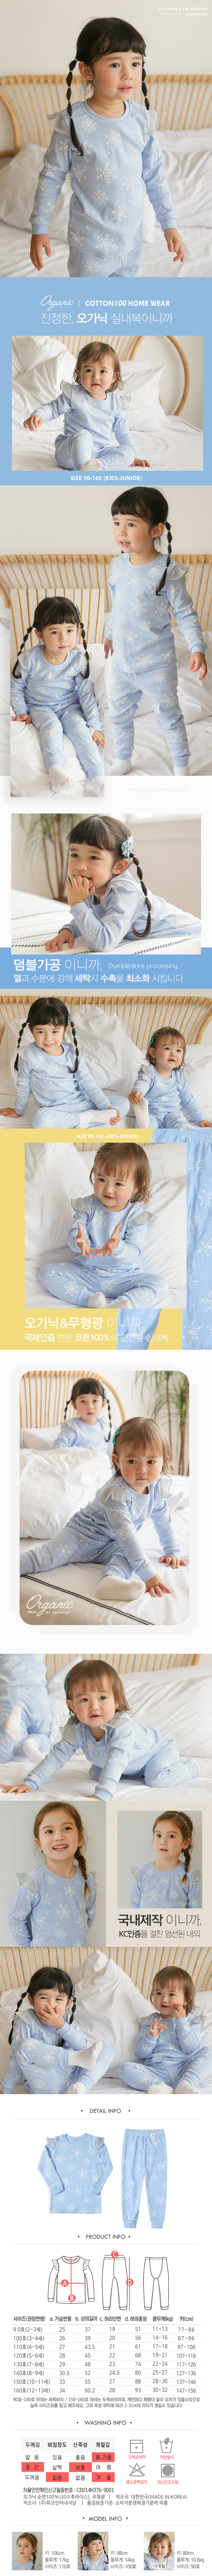 韓國製有機棉秋款家居服(上衣+褲子)-冰雪公主